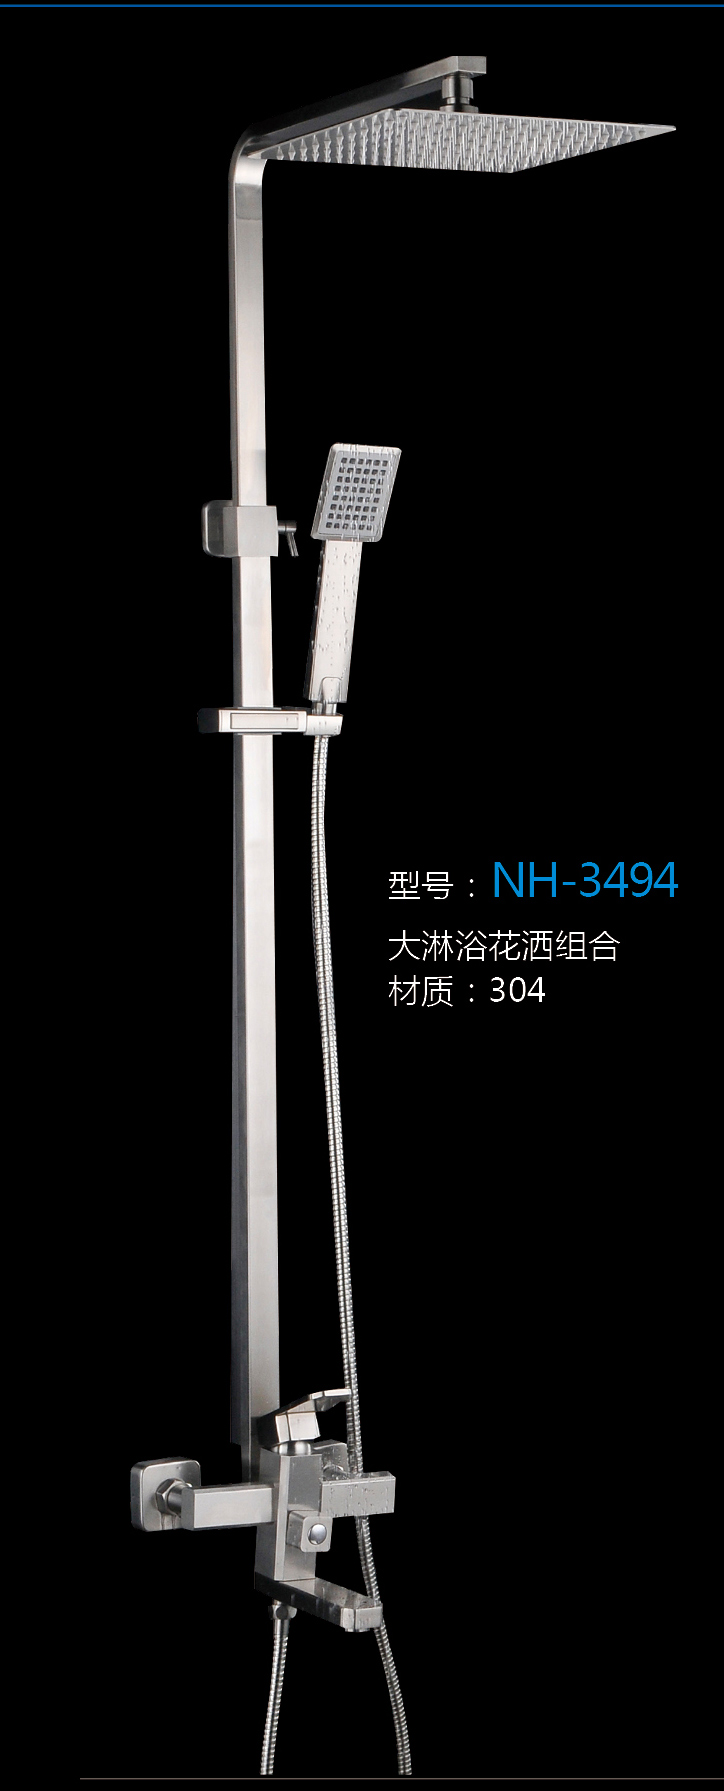 [Hardware Series] NH-3494 NH-3494